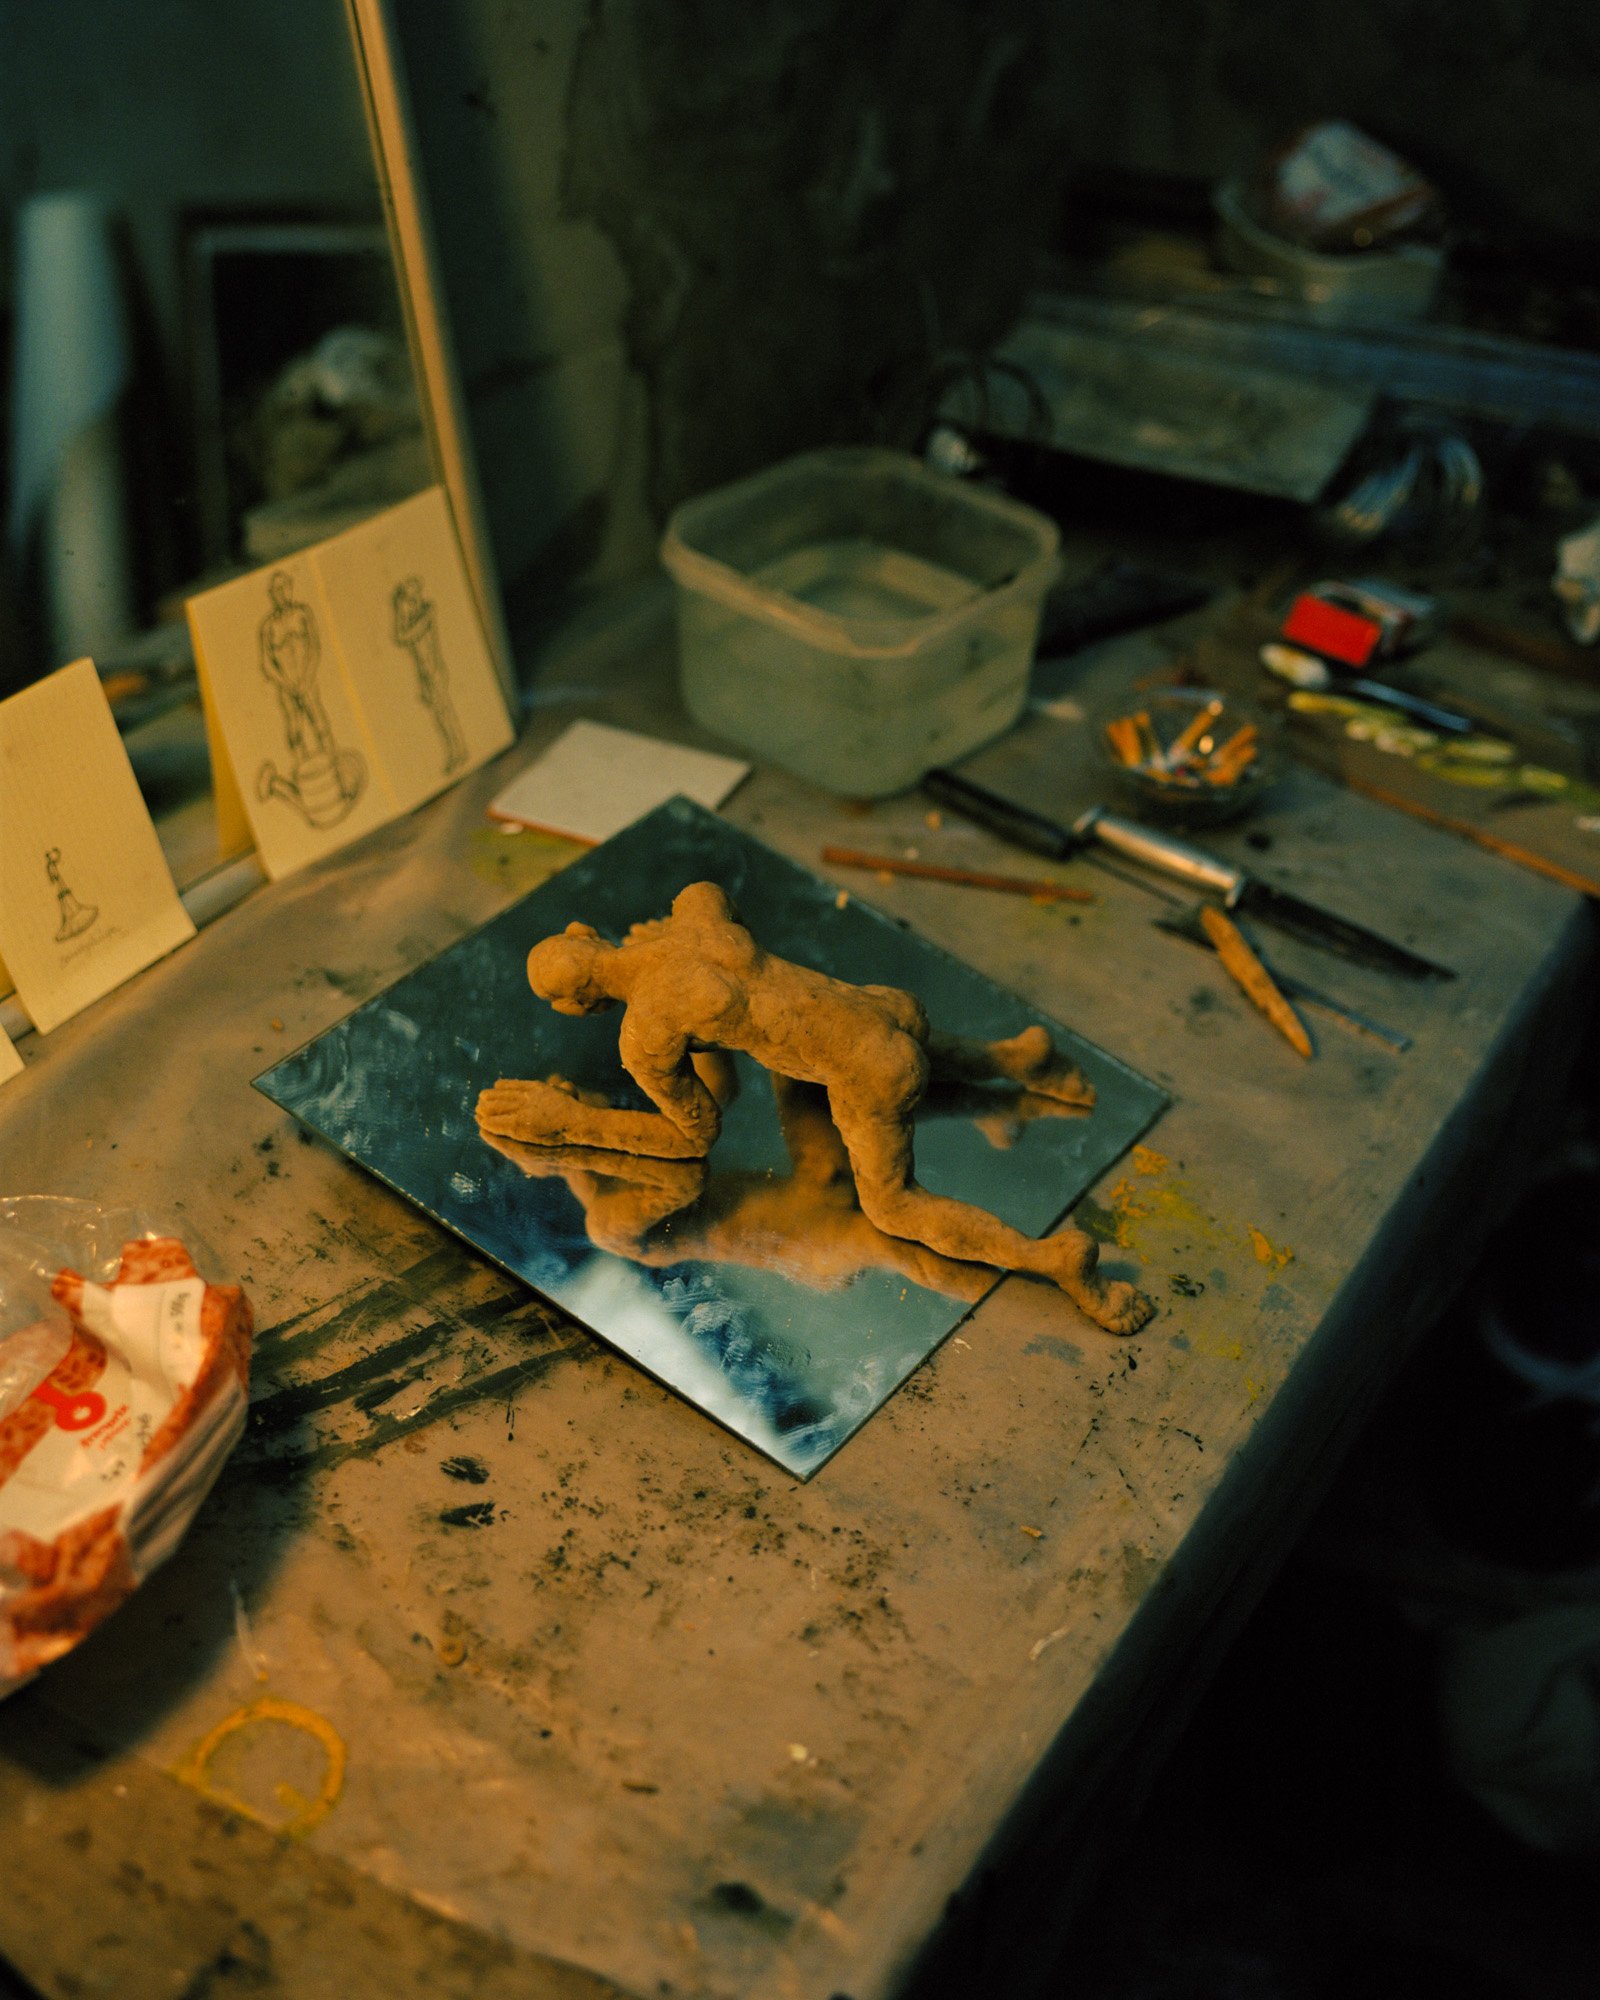  10 novembre 2022. Aubervilliers, France. Une sculpture de l’artiste russe Andrey Kuzkin dans son atelier improvisé dans la maison qu’il occupe à Aubervilliers. La maison qu’il occupe lui a été prêté temporairement par le commissaire d’exposition et 